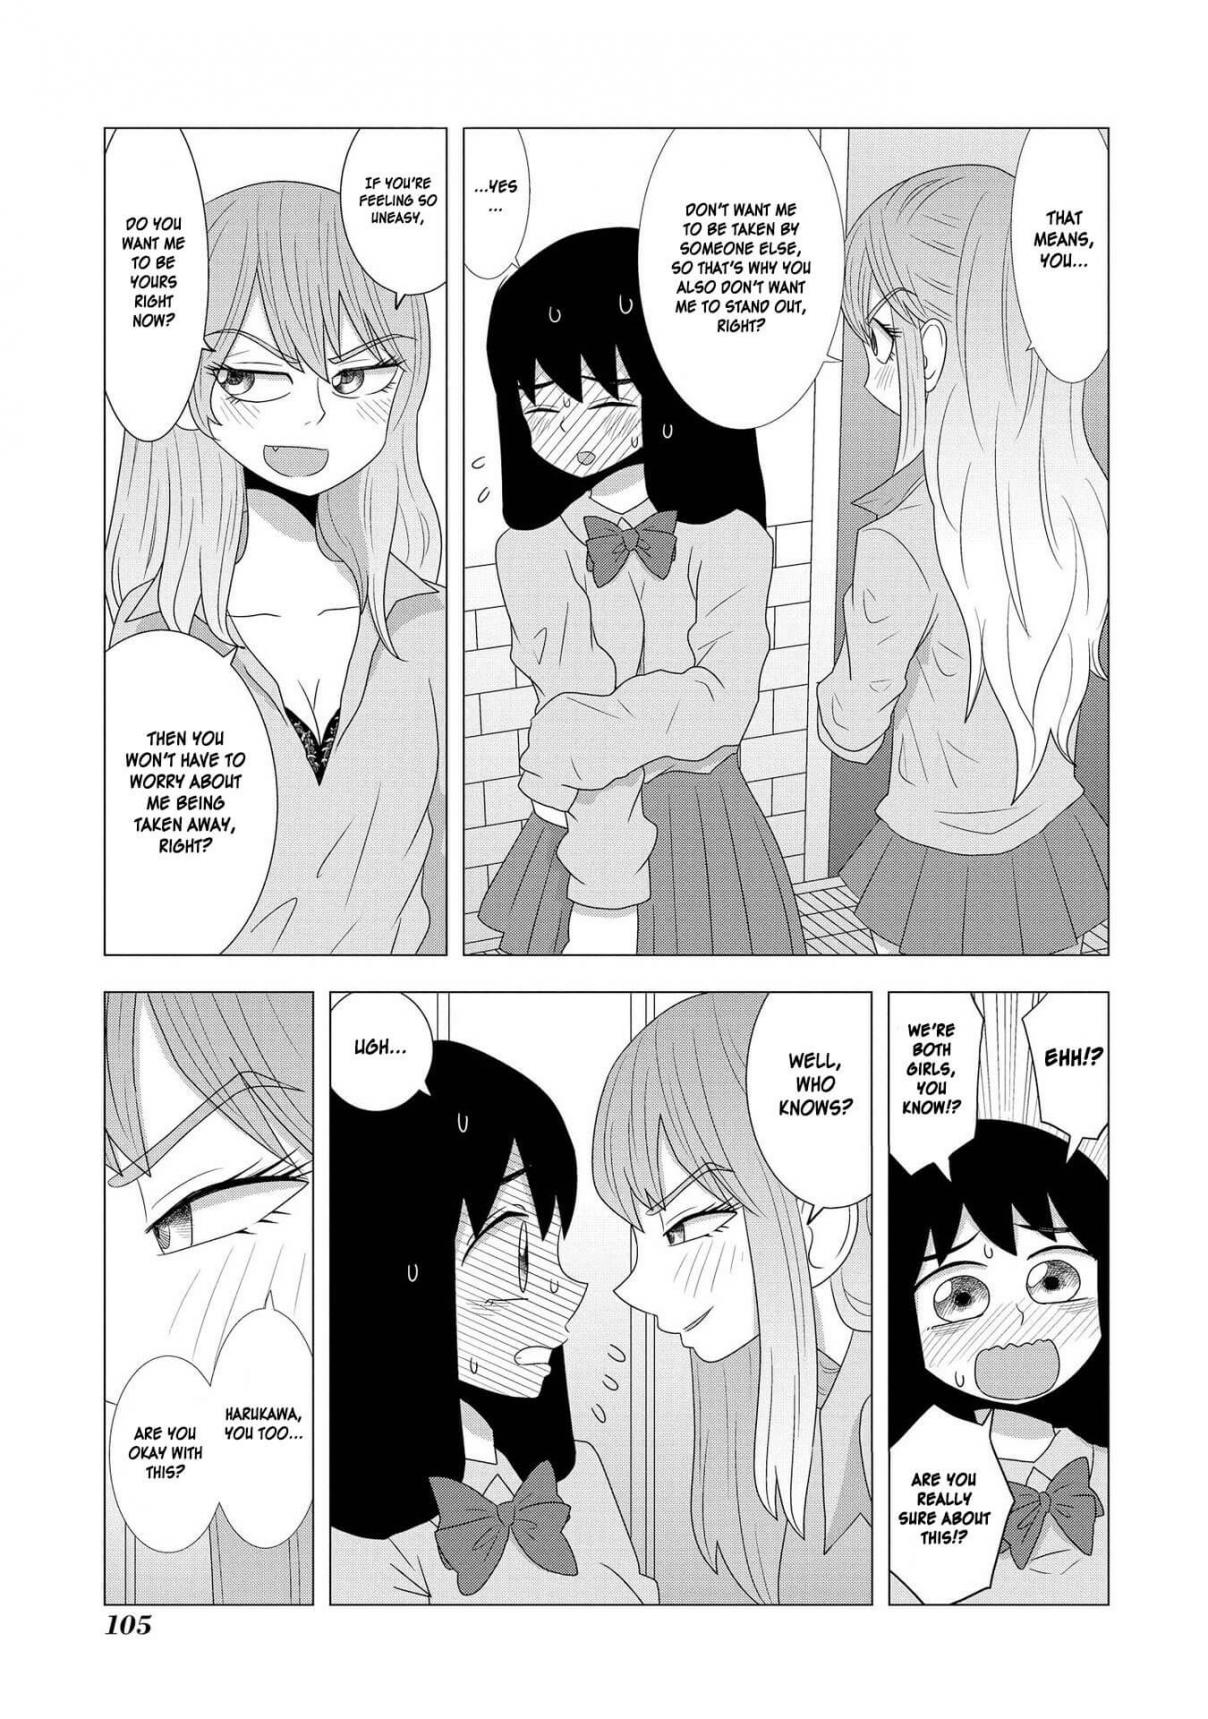 Hyottoshite Gyaru wa Orera ni Yasashii no Dewa? Anthology Comic Vol. 3 Ch. 21 I want to be bullied by a Gal like her!